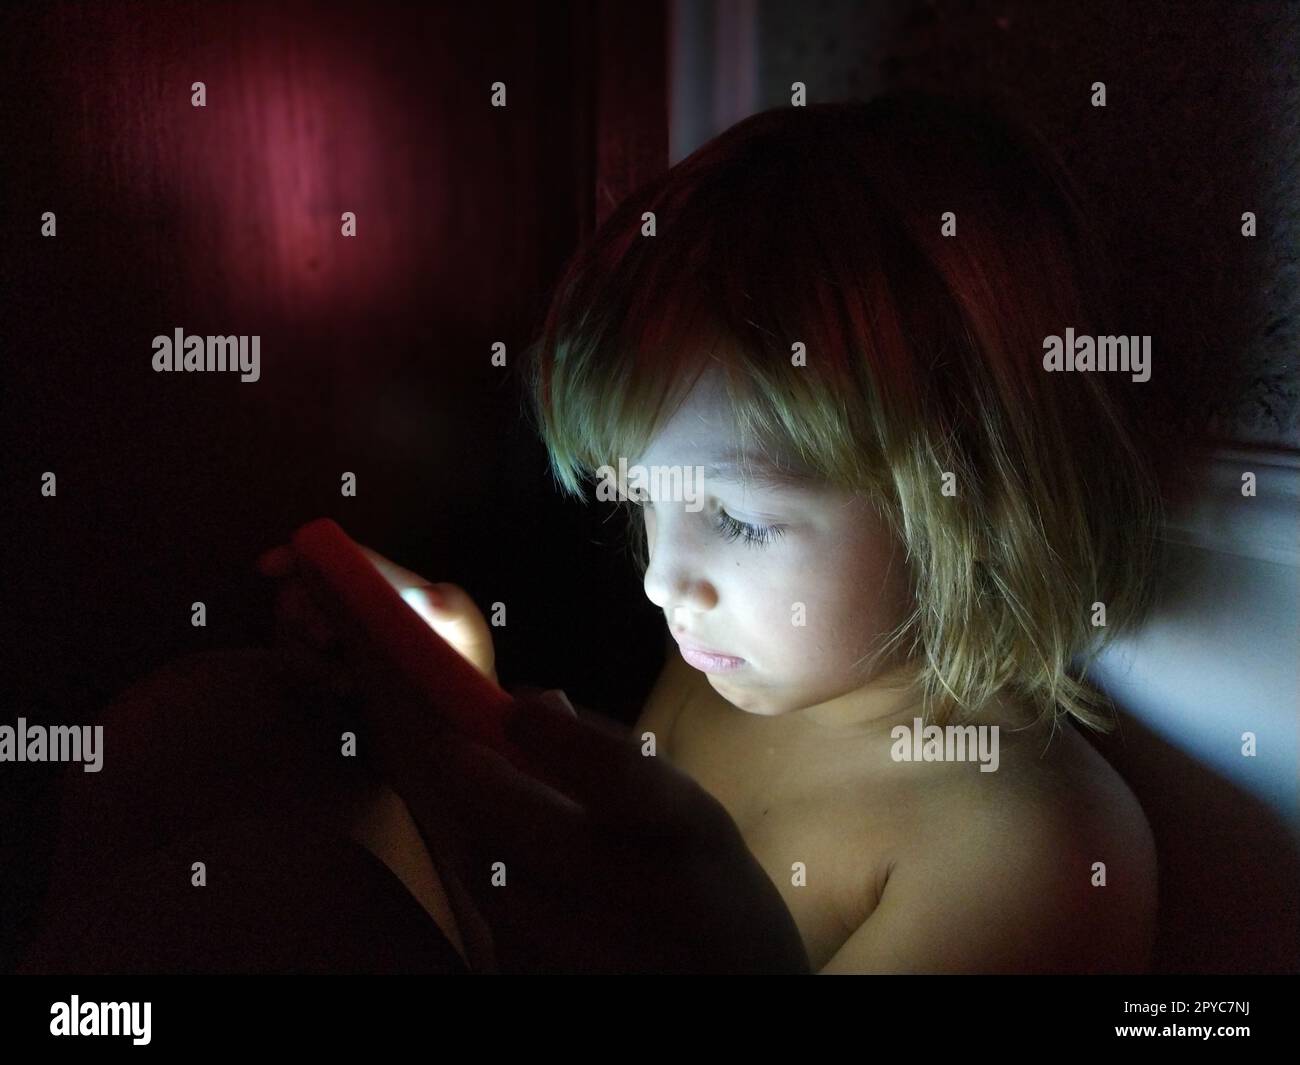 Una bambina carina gioca con un tablet. Un bambino di 7 anni con una faccia seria e capelli biondi guarda in un gadget. Copia spazio. Ragazza nella stanza. Parete scura e chiara. A casa di notte Foto Stock